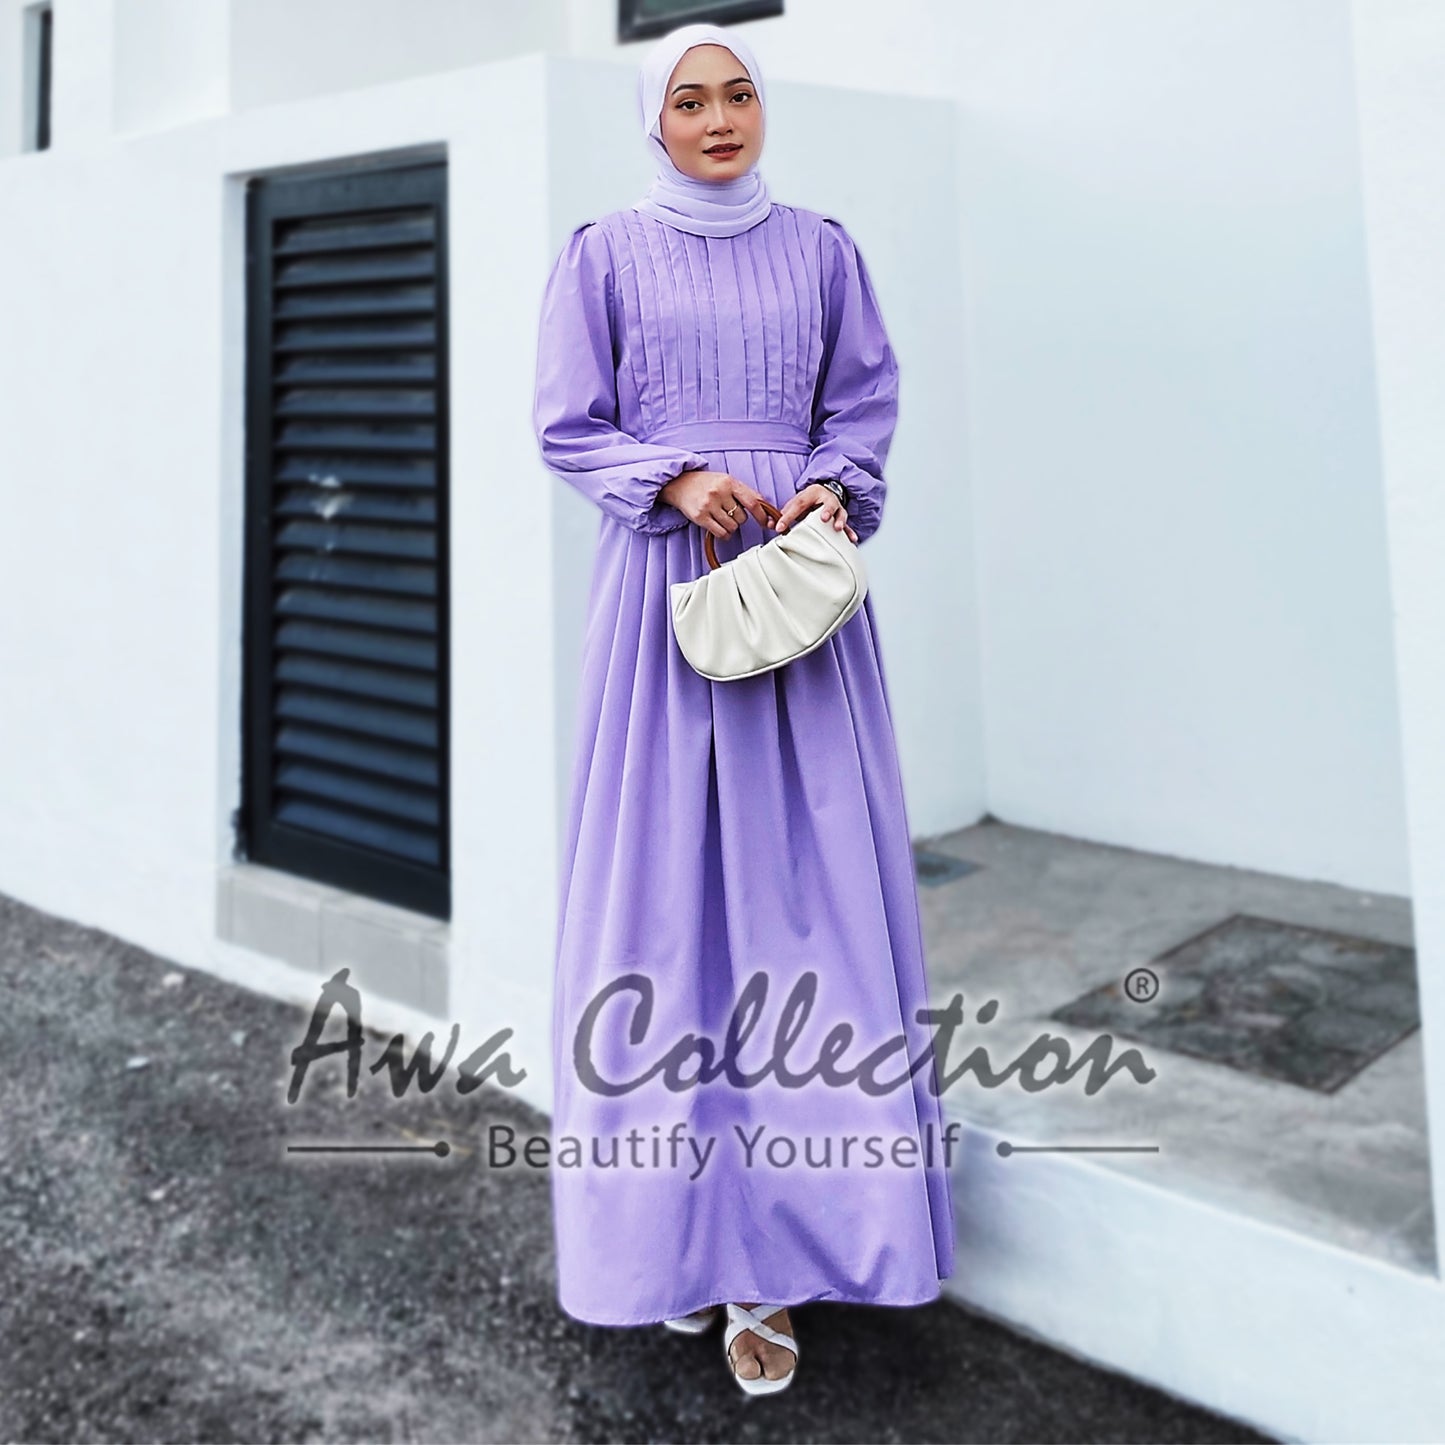 LALEESA Awa Collection DA127162 DRESS SAEEDA Dress Muslimah Dress Women Dress Baju Muslimah Baju Raya 2024